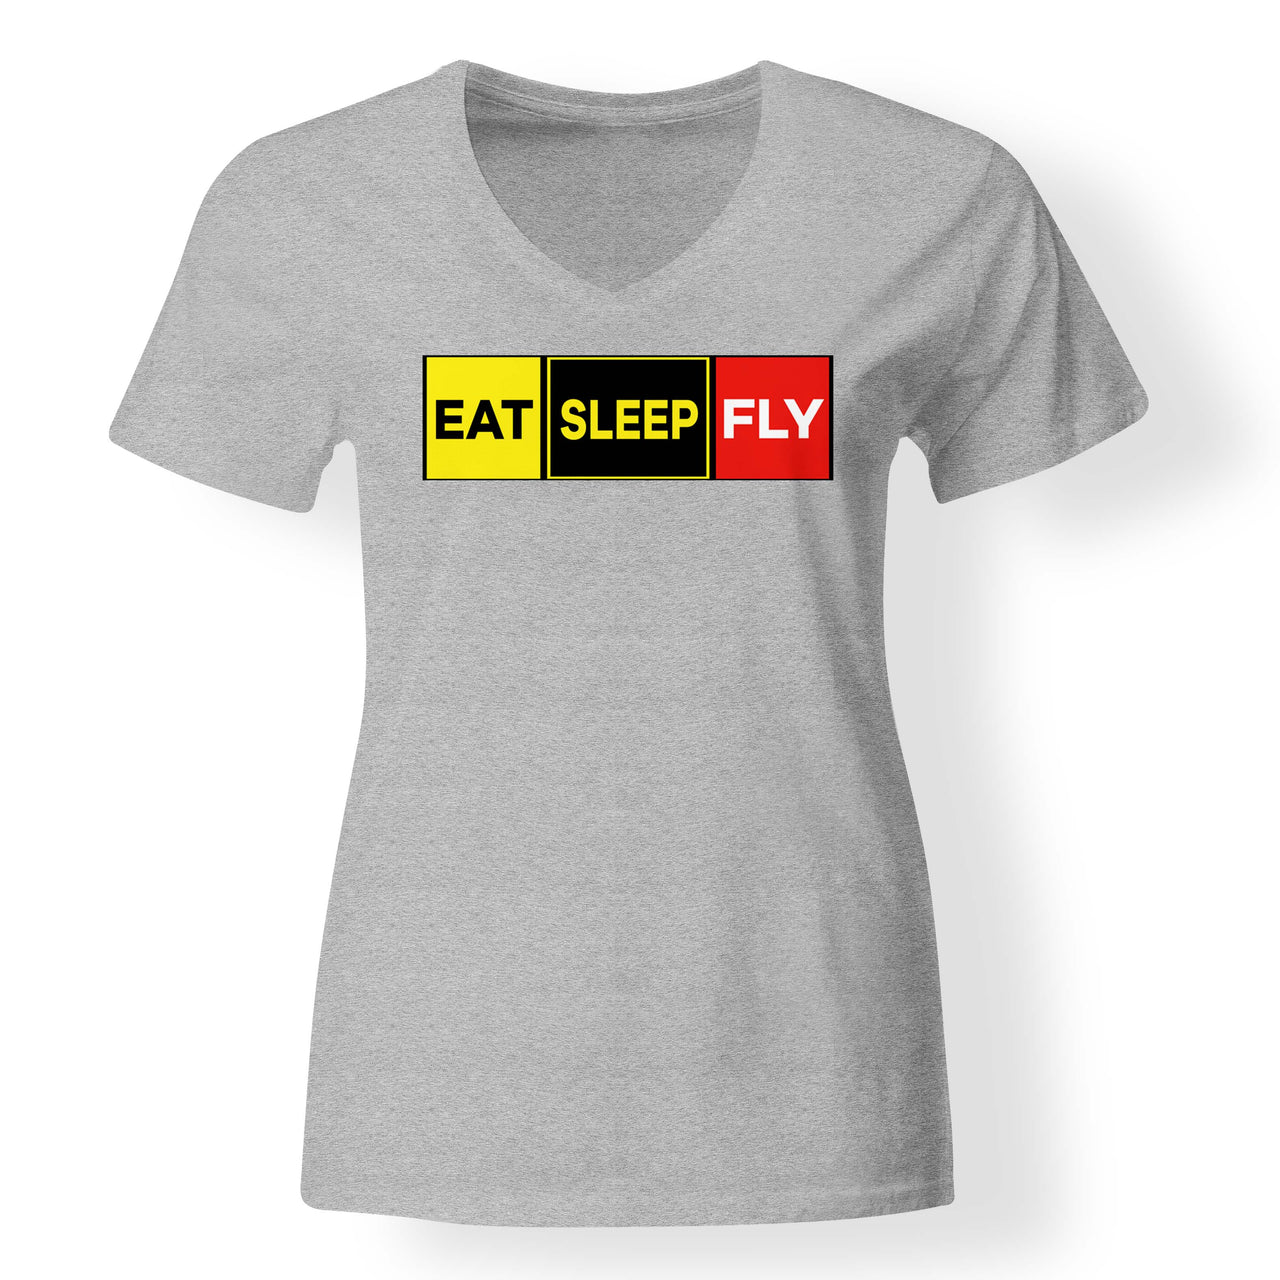 Eat Sleep Fly (Colourful) Designed V-Neck T-Shirts